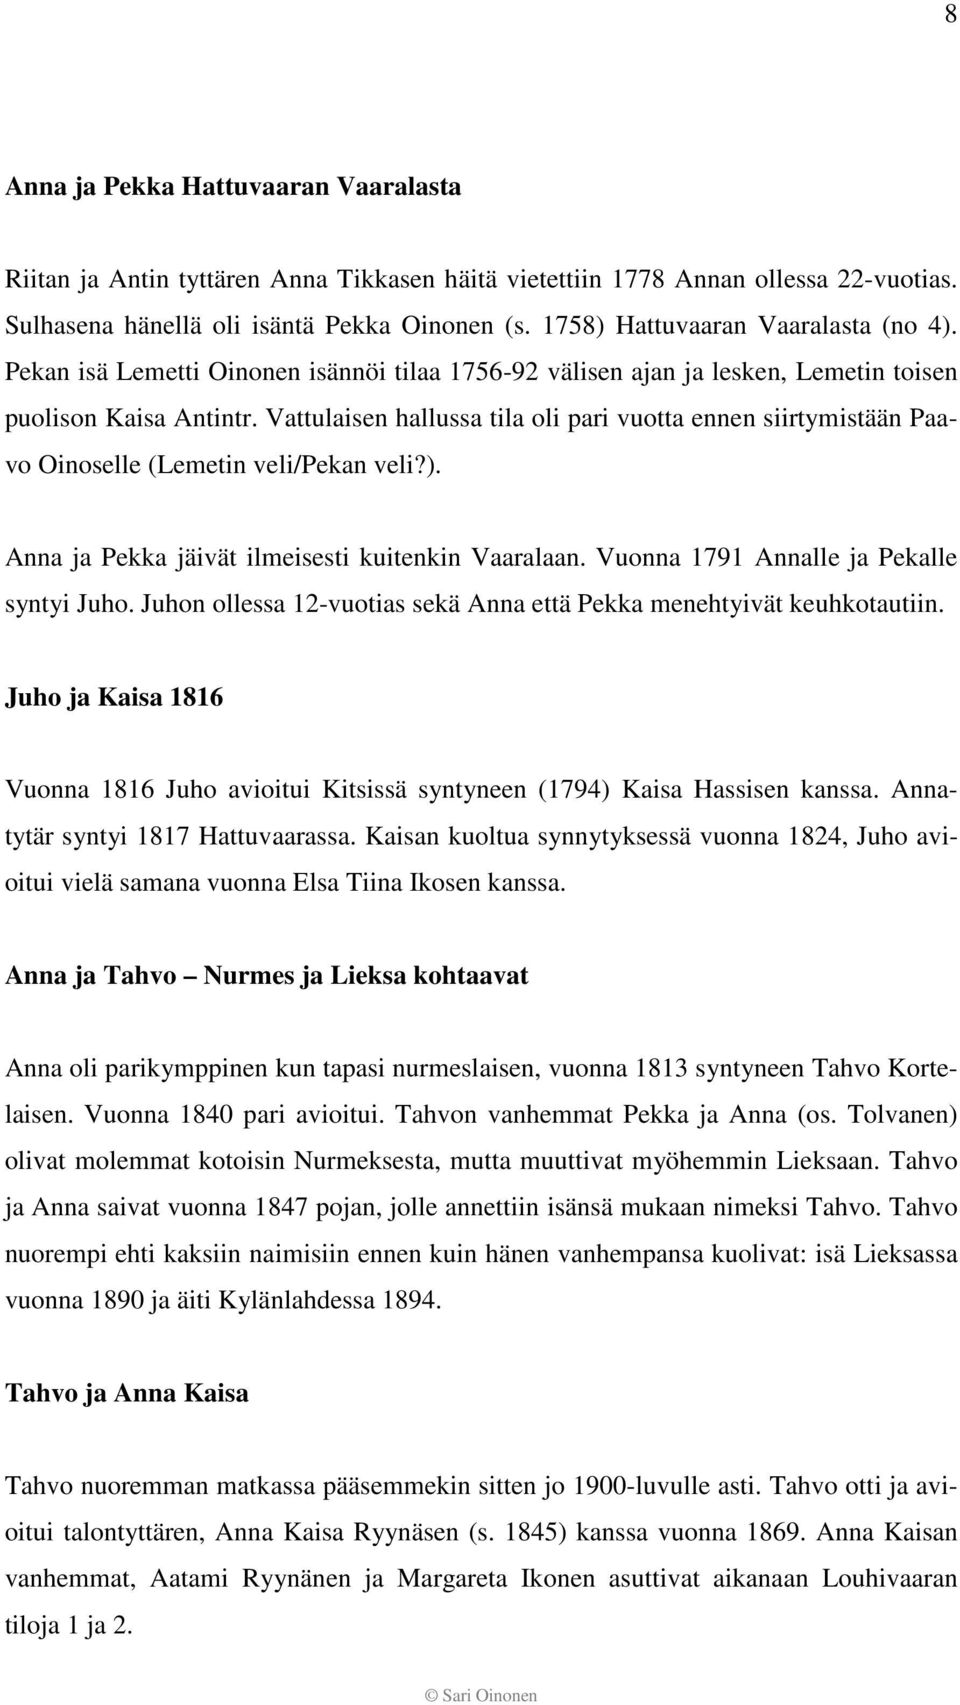 Vattulaisen hallussa tila oli pari vuotta ennen siirtymistään Paavo Oinoselle (Lemetin veli/pekan veli?). Anna ja Pekka jäivät ilmeisesti kuitenkin Vaaralaan.